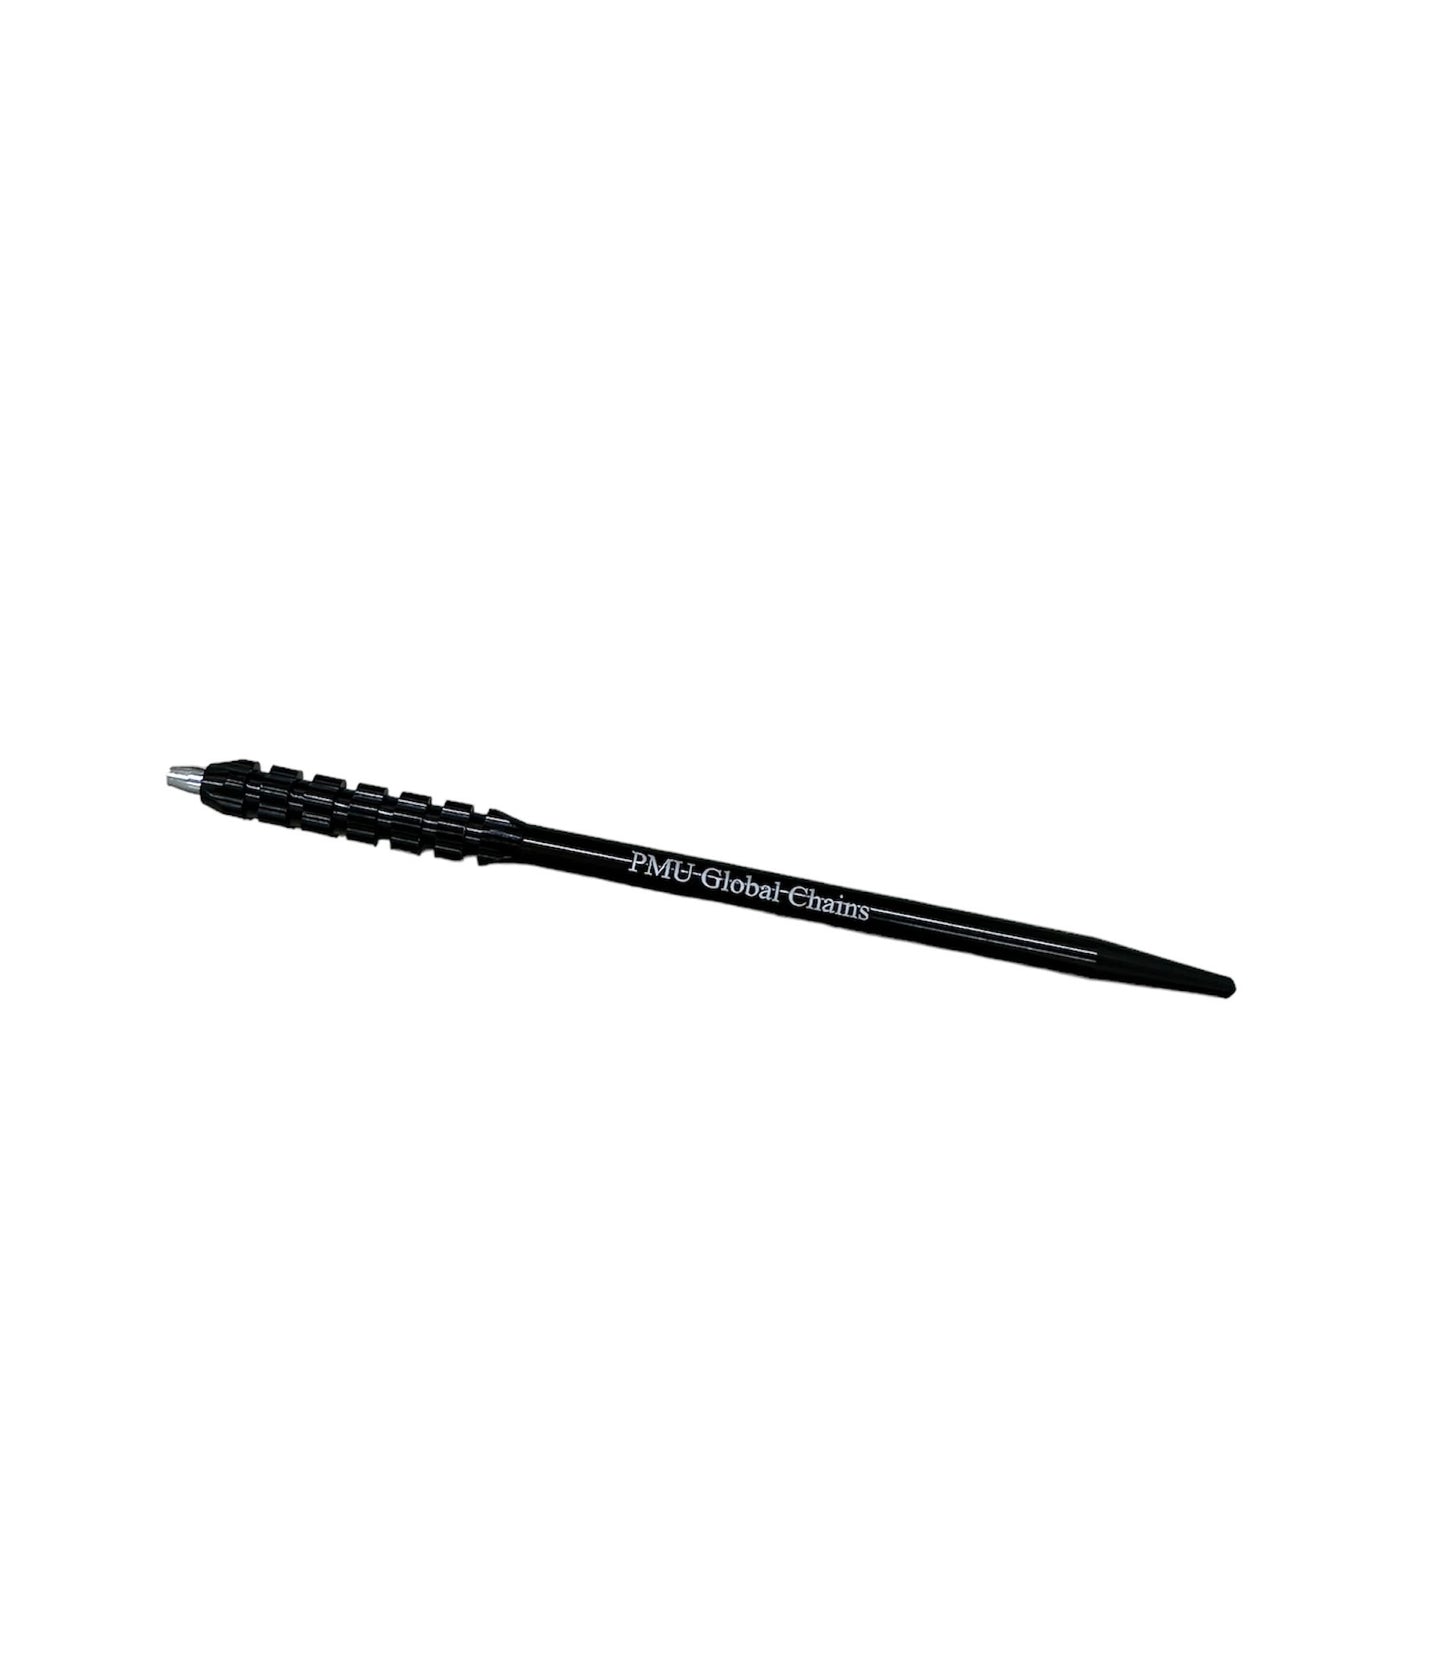 PMU Manual Pen Holder （手彫り用ペンホルダー） Black